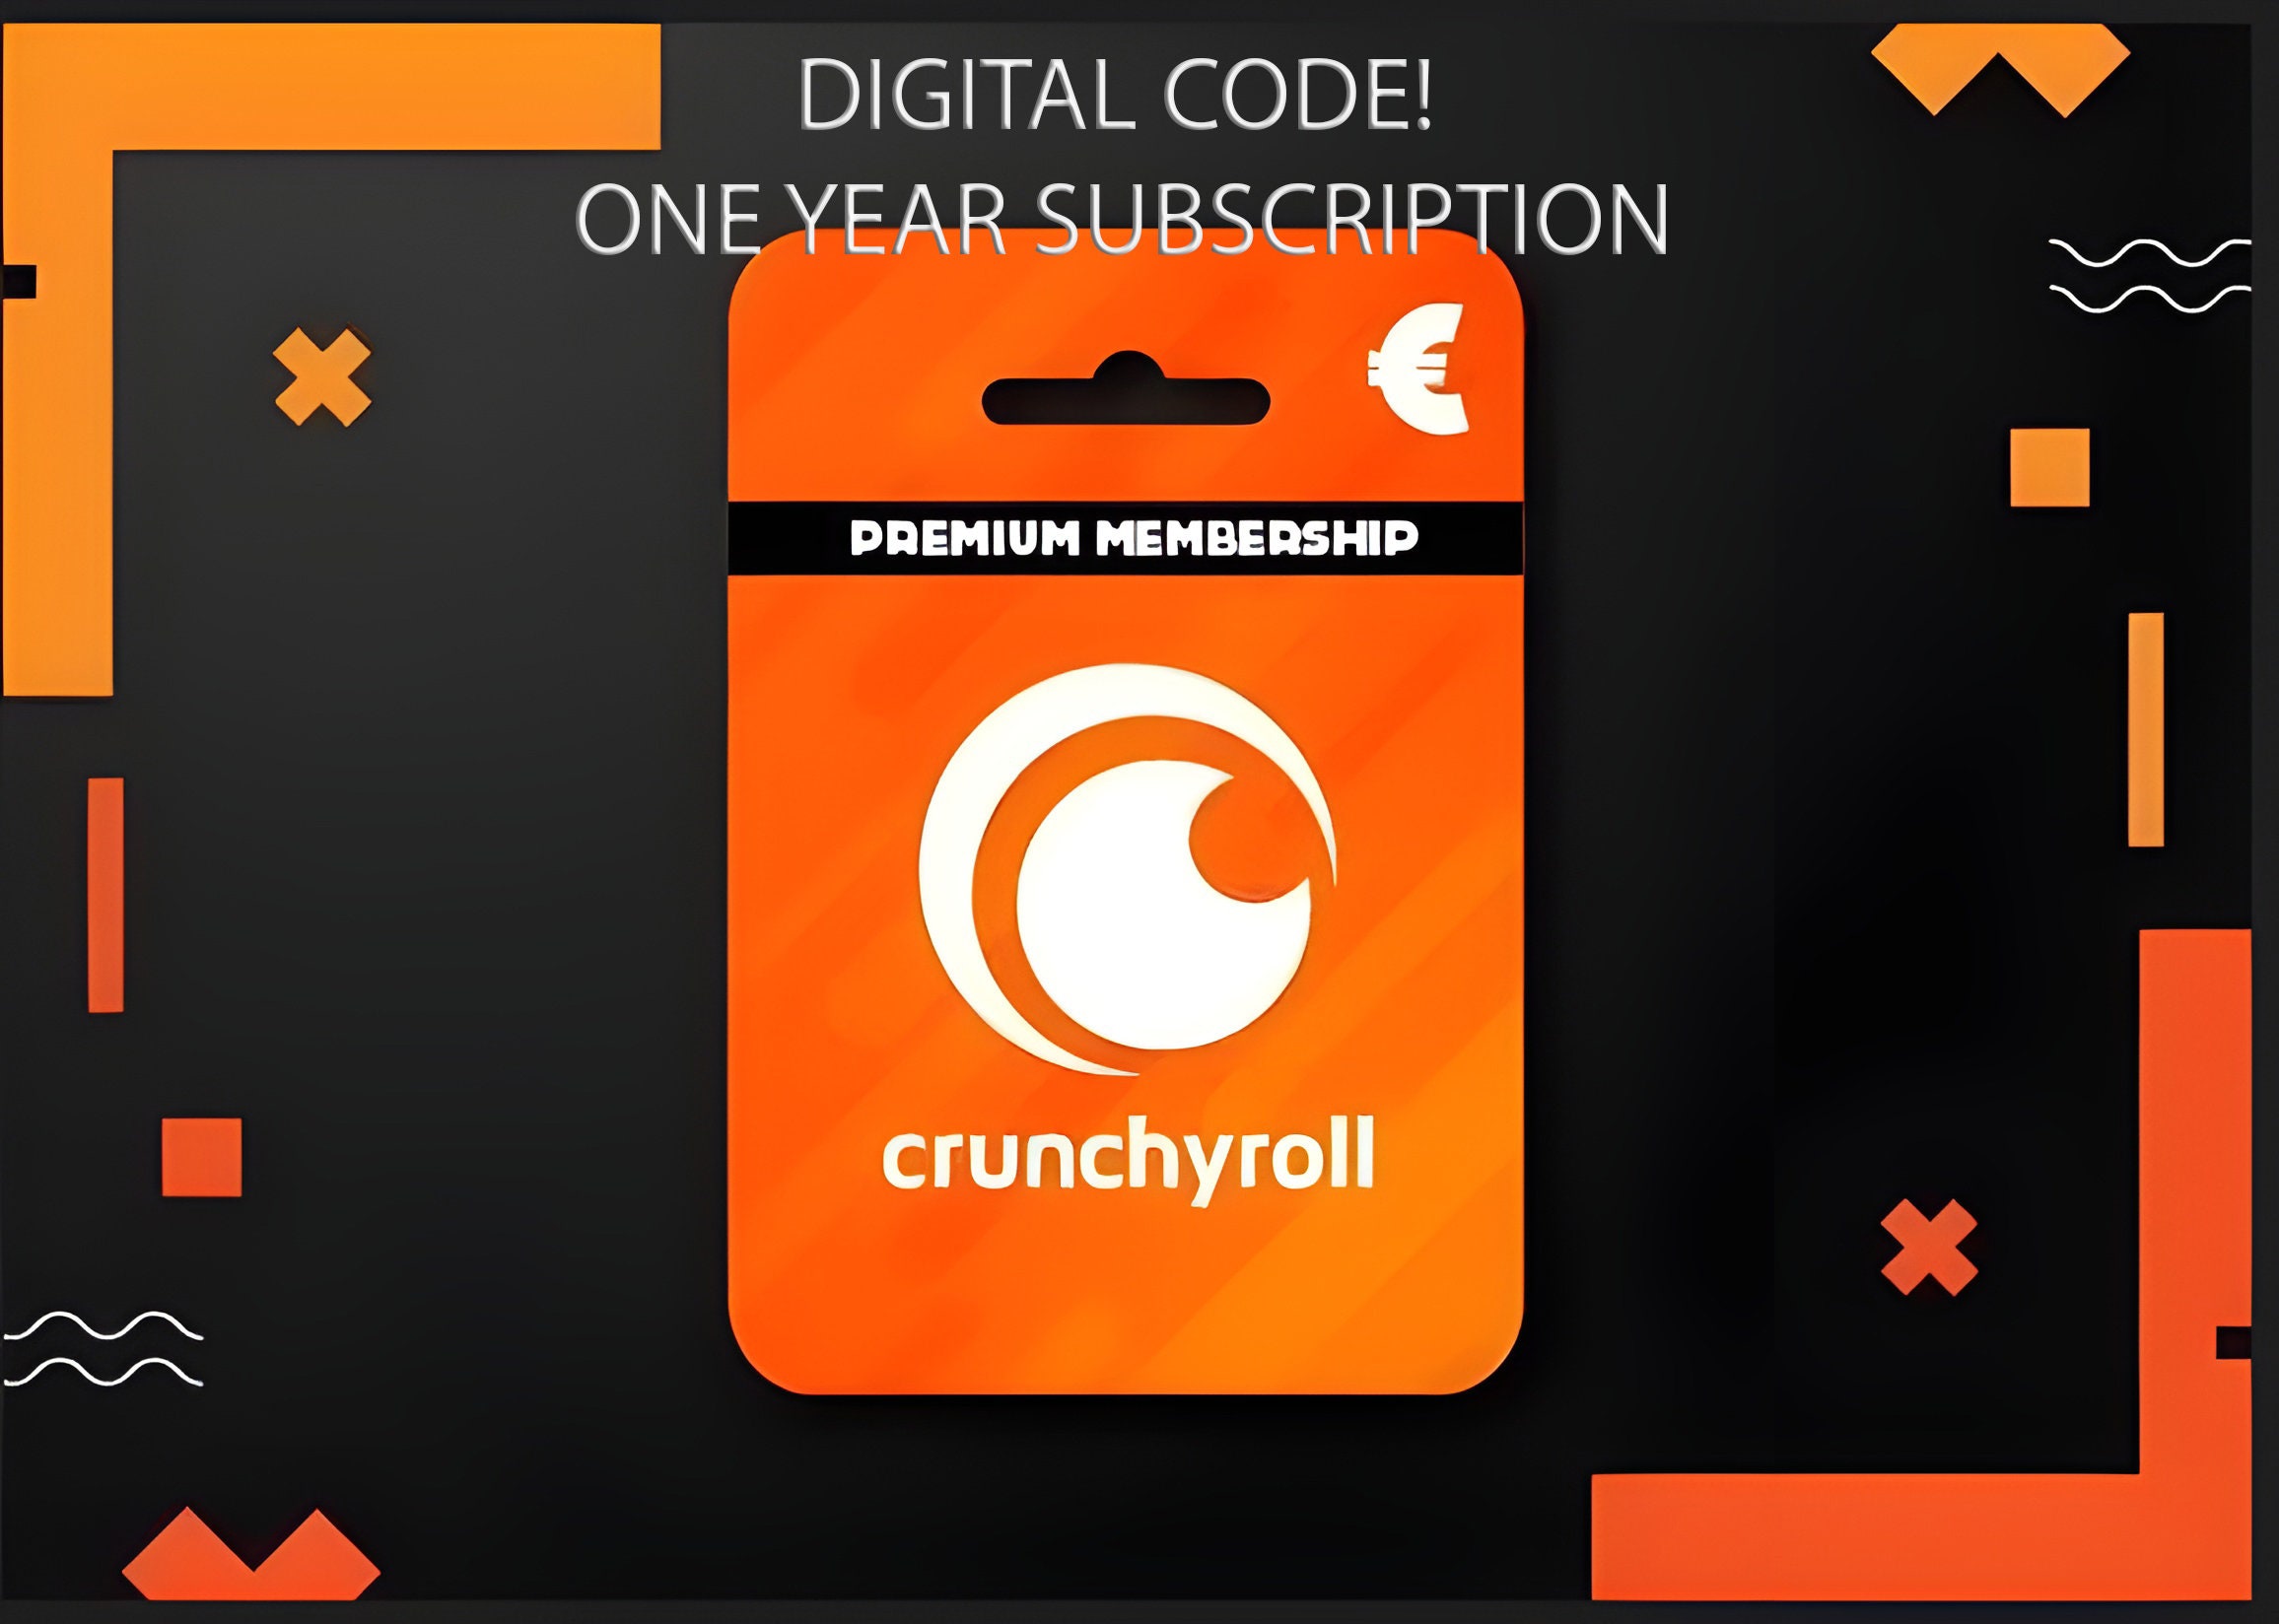 Crunchyroll stickers being added to merch? : r/Crunchyroll